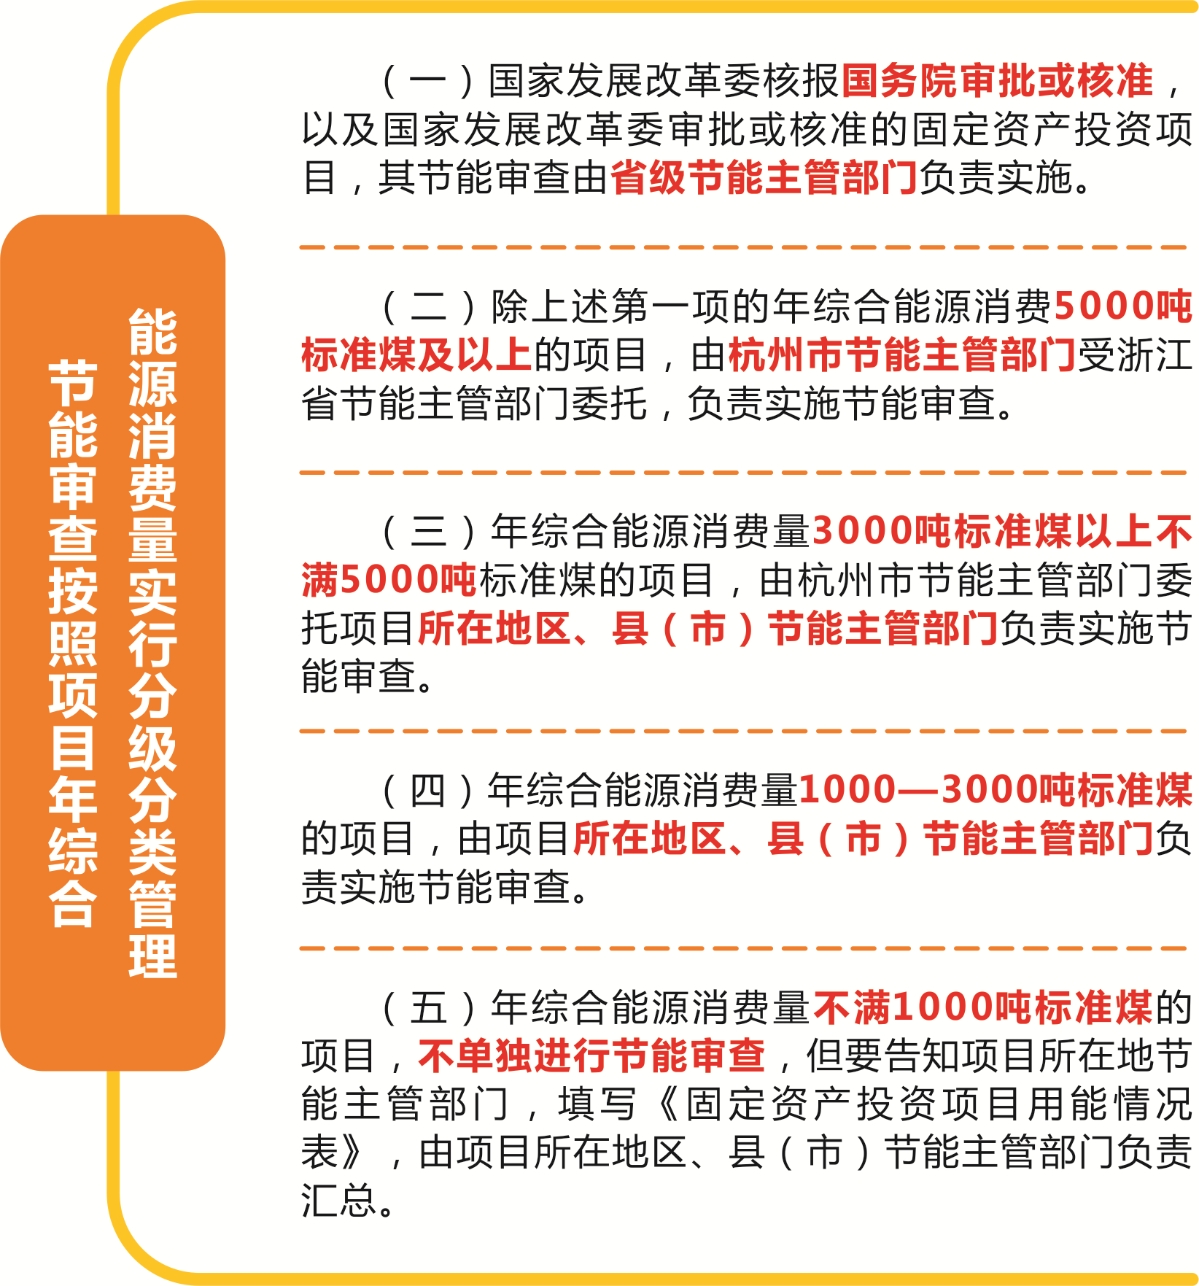 《市发改委关于印发〈杭州市固定资产投资项目节能审查办法〉的通知》解读